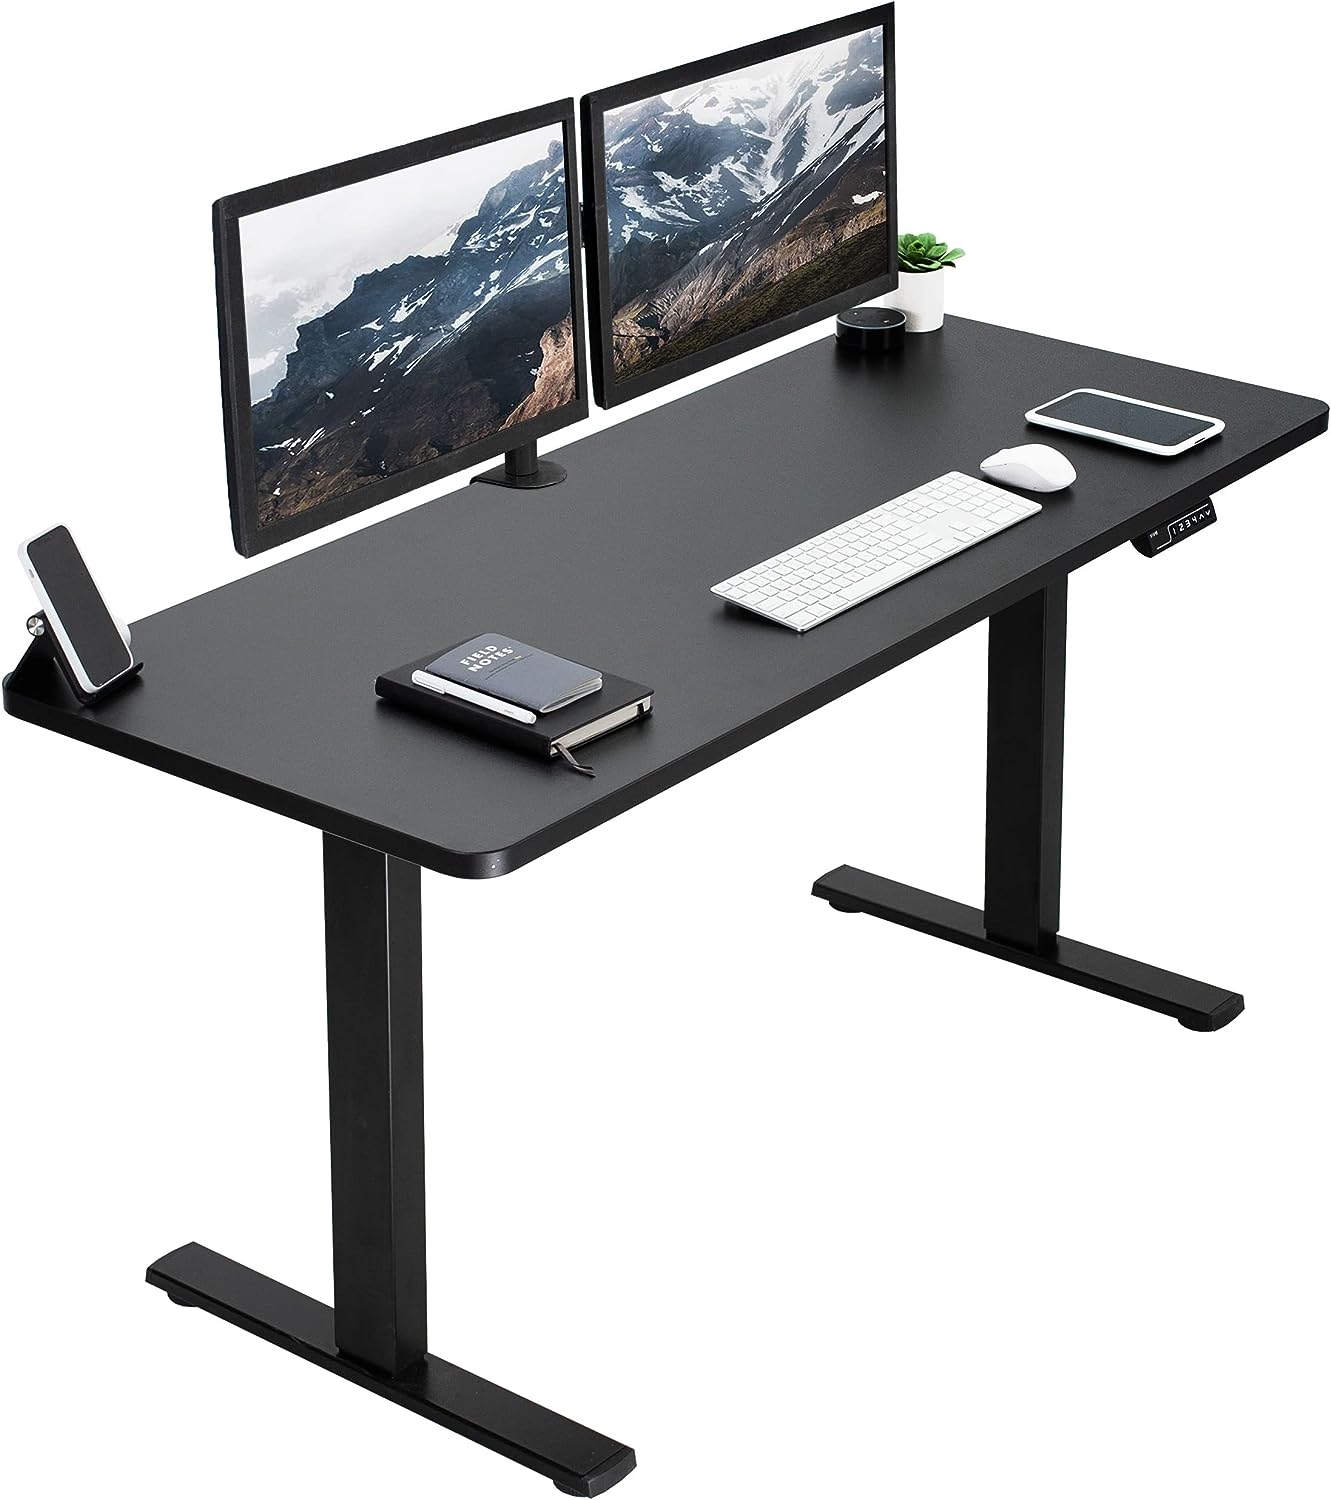 VIVO Electric Standing Desk | DeviceDaily.com